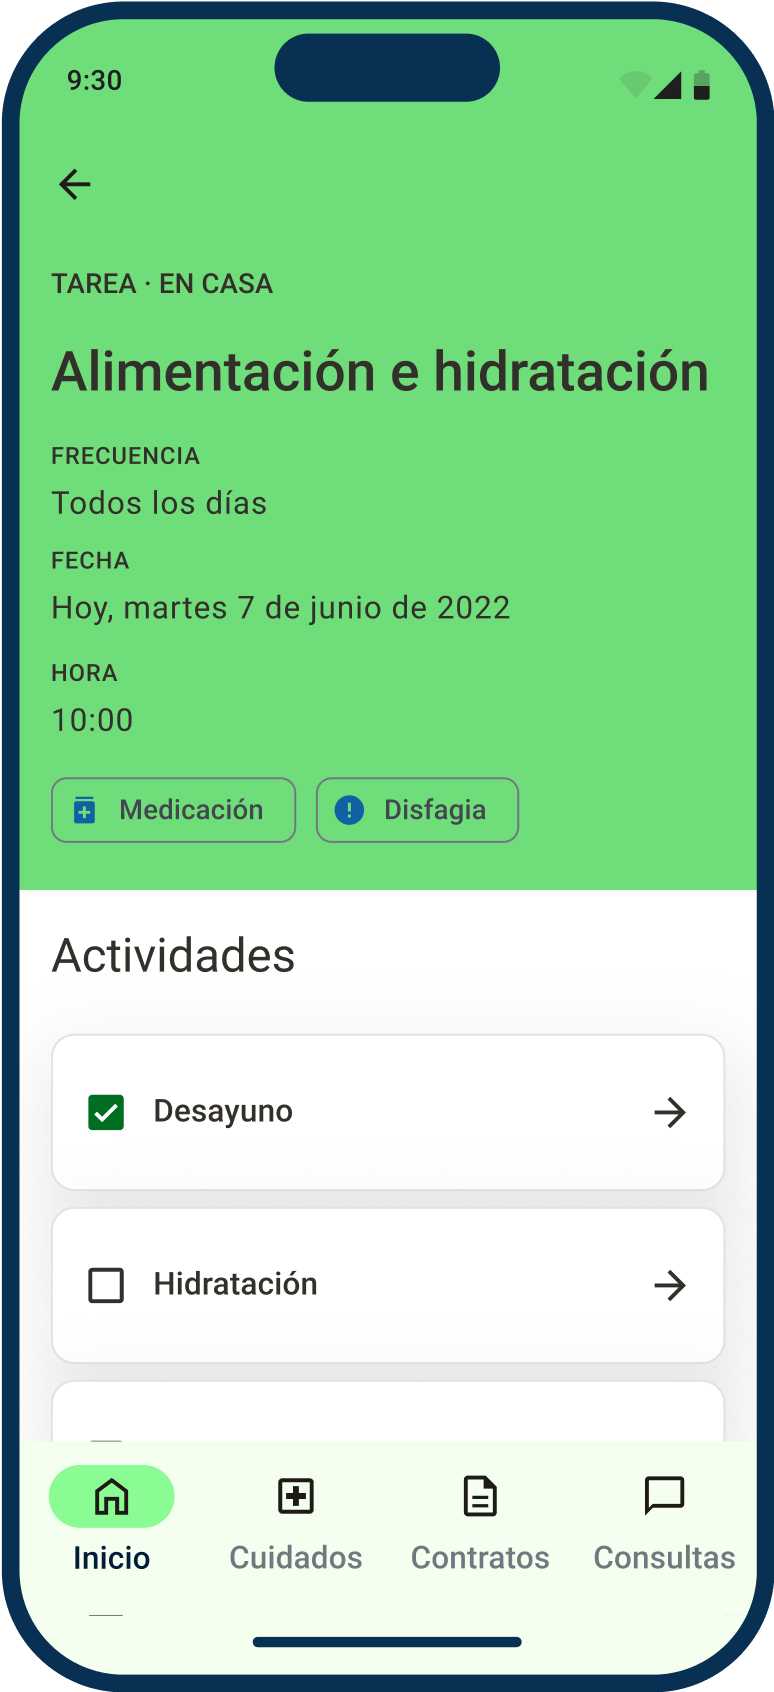 App de Ubikare, pantalla de detalle de la tarea, muestra frecuencia, hora, lista de actividades a completar, etc.